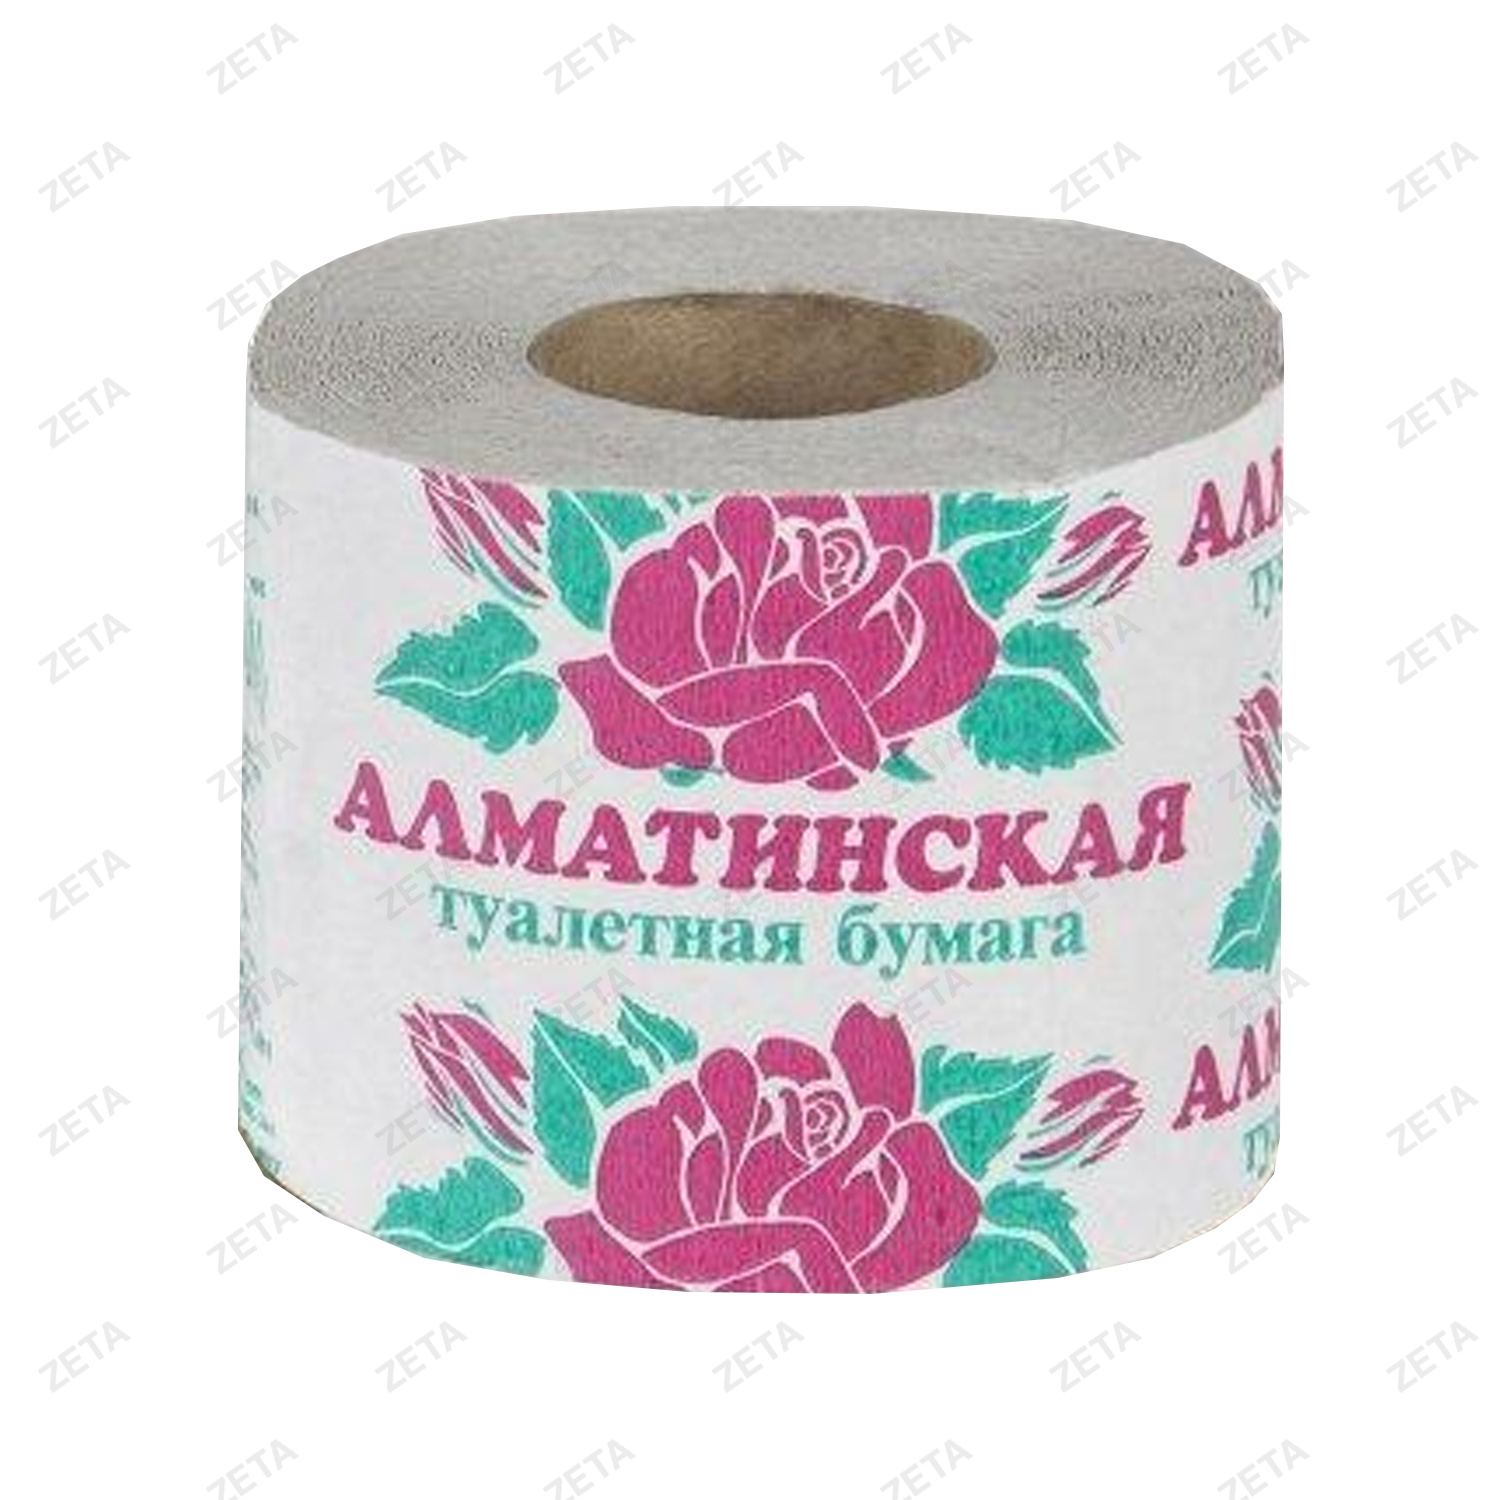 Туалетная бумага "Алматинская" (1 рулон) - изображение 1